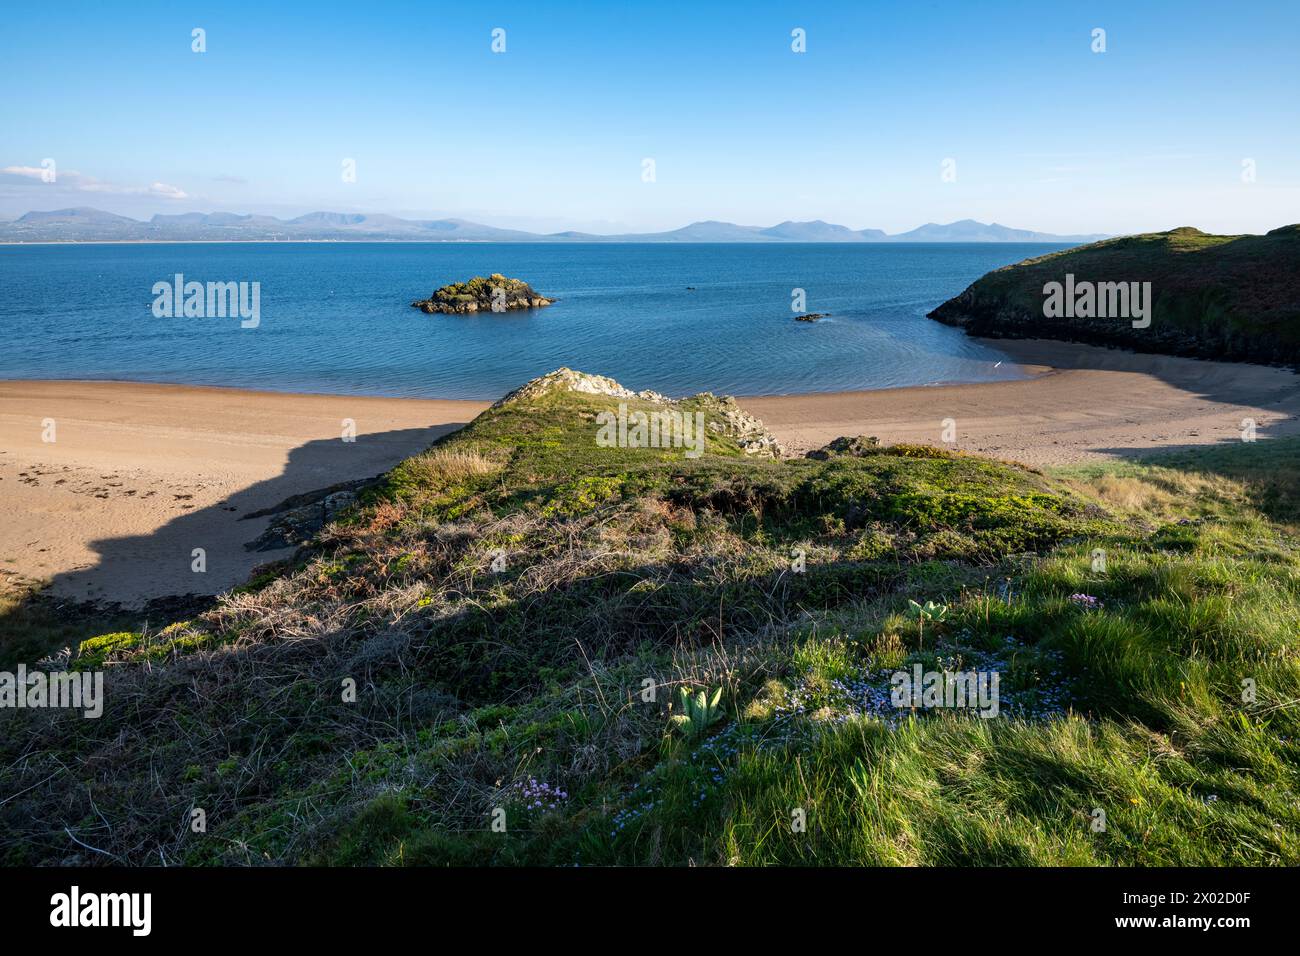 Wunderschöne Aussicht von Llanddwyn Island auf Anglesey mit den Bergen des walisischen Festlandes am Horizont. Stockfoto